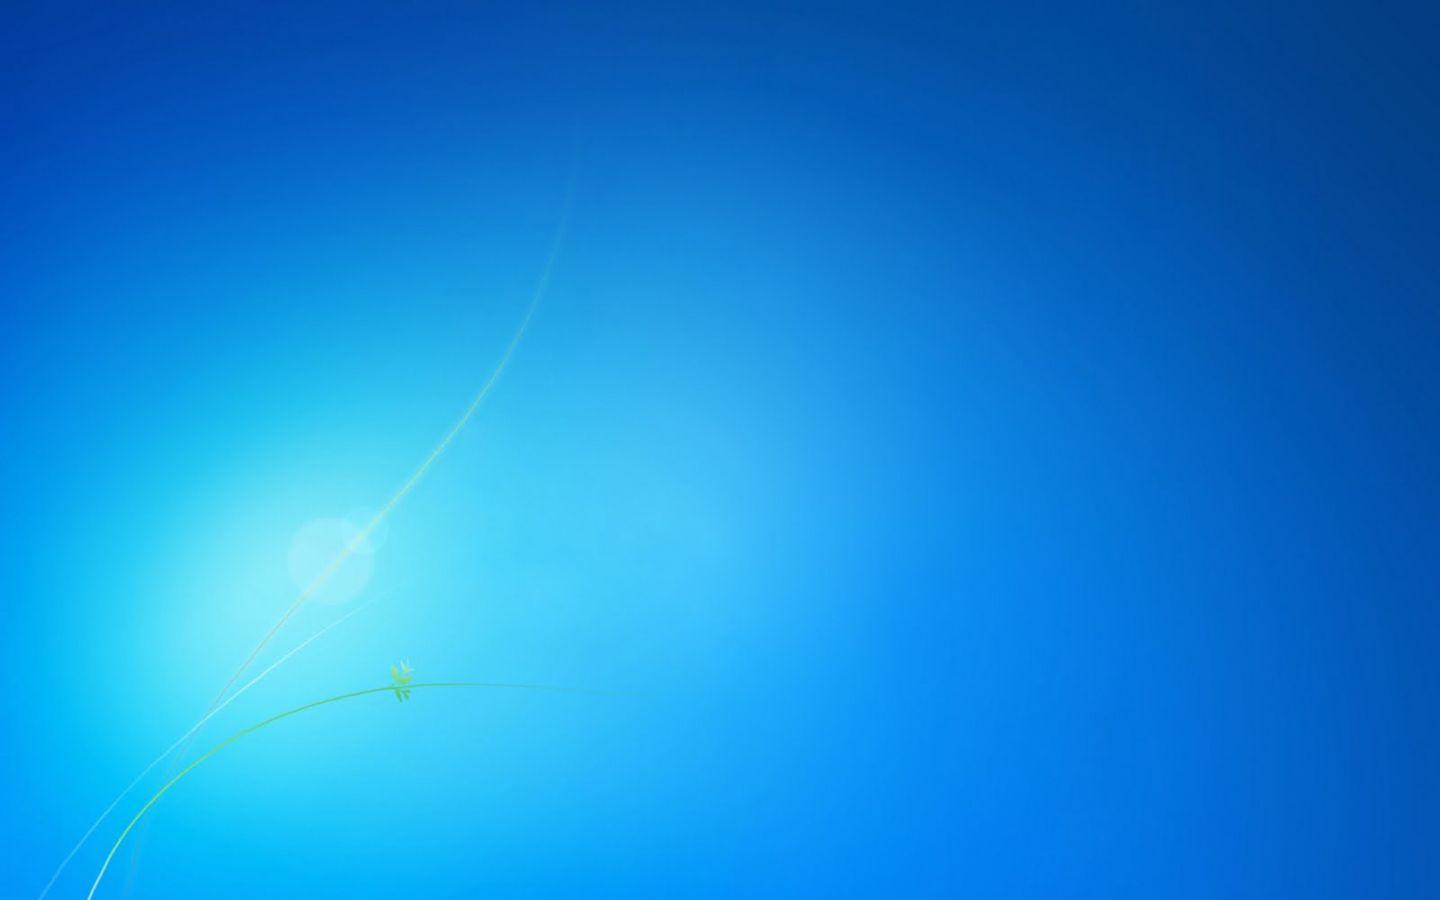 1440x900 Tải xuống miễn phí Hộp hình nền Windows 7 Không có logo Hình nền HD xanh sạch [1600x1000] cho Máy tính để bàn, Di động & Máy tính bảng của bạn.  Khám phá Nền Windows 7 HD.  Hình nền Windows 7 tốt nhất, HD